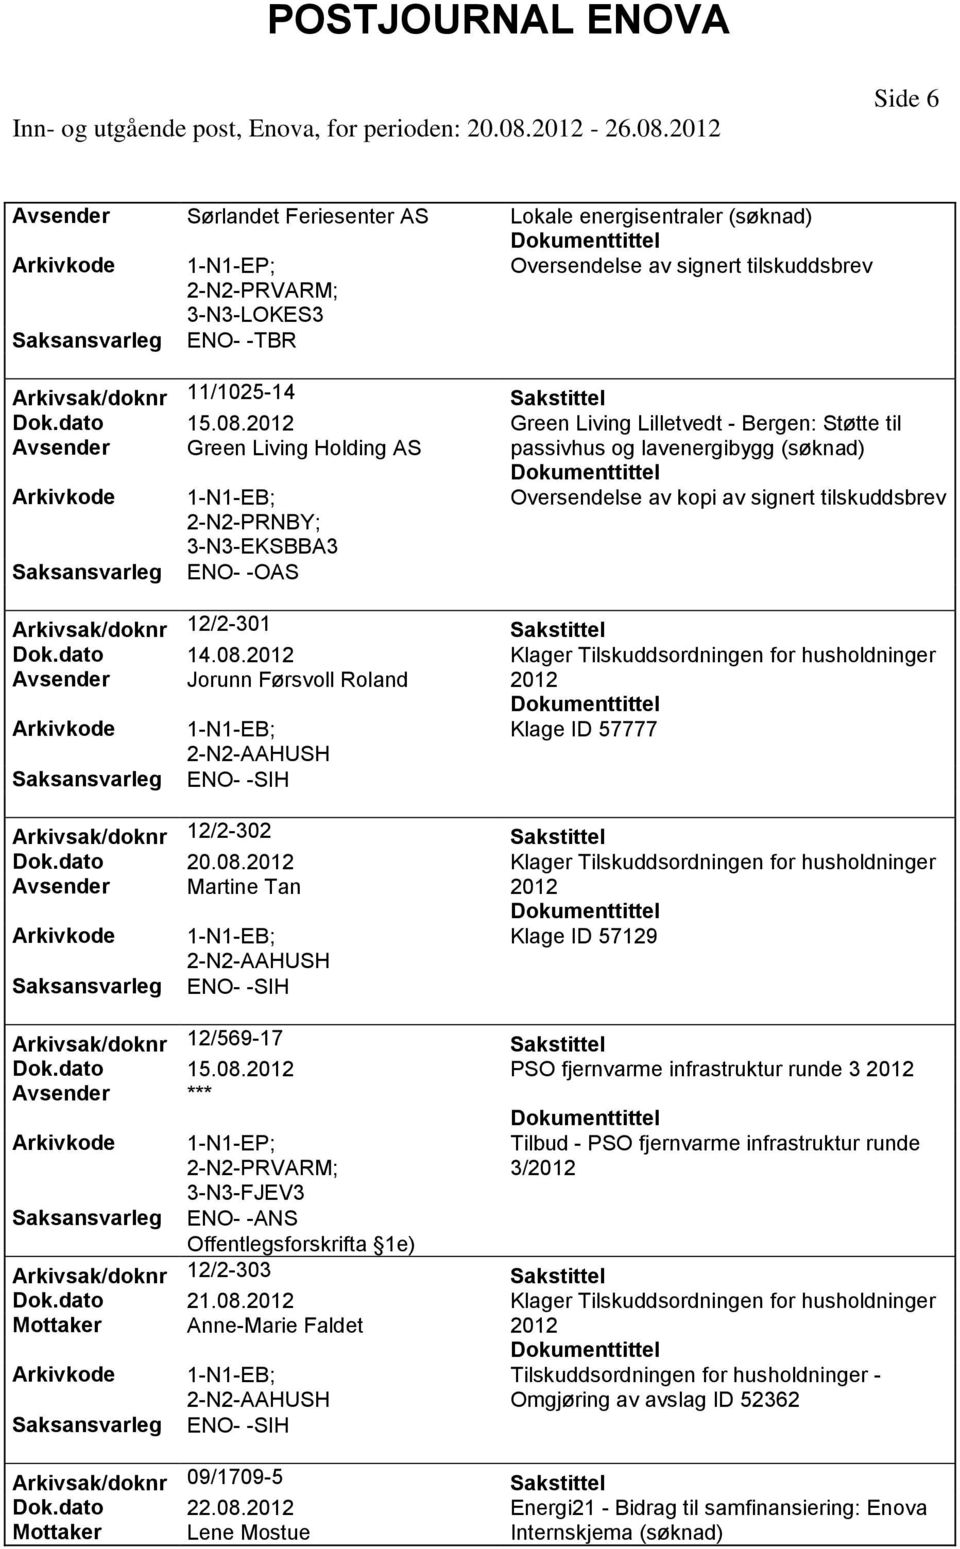 Side 6 Avsender Sørlandet Feriesenter AS Lokale energisentraler 3-N3-LOKES3 ENO- -TBR Arkivsak/doknr 11/1025-14 Dok.dato 15.08.